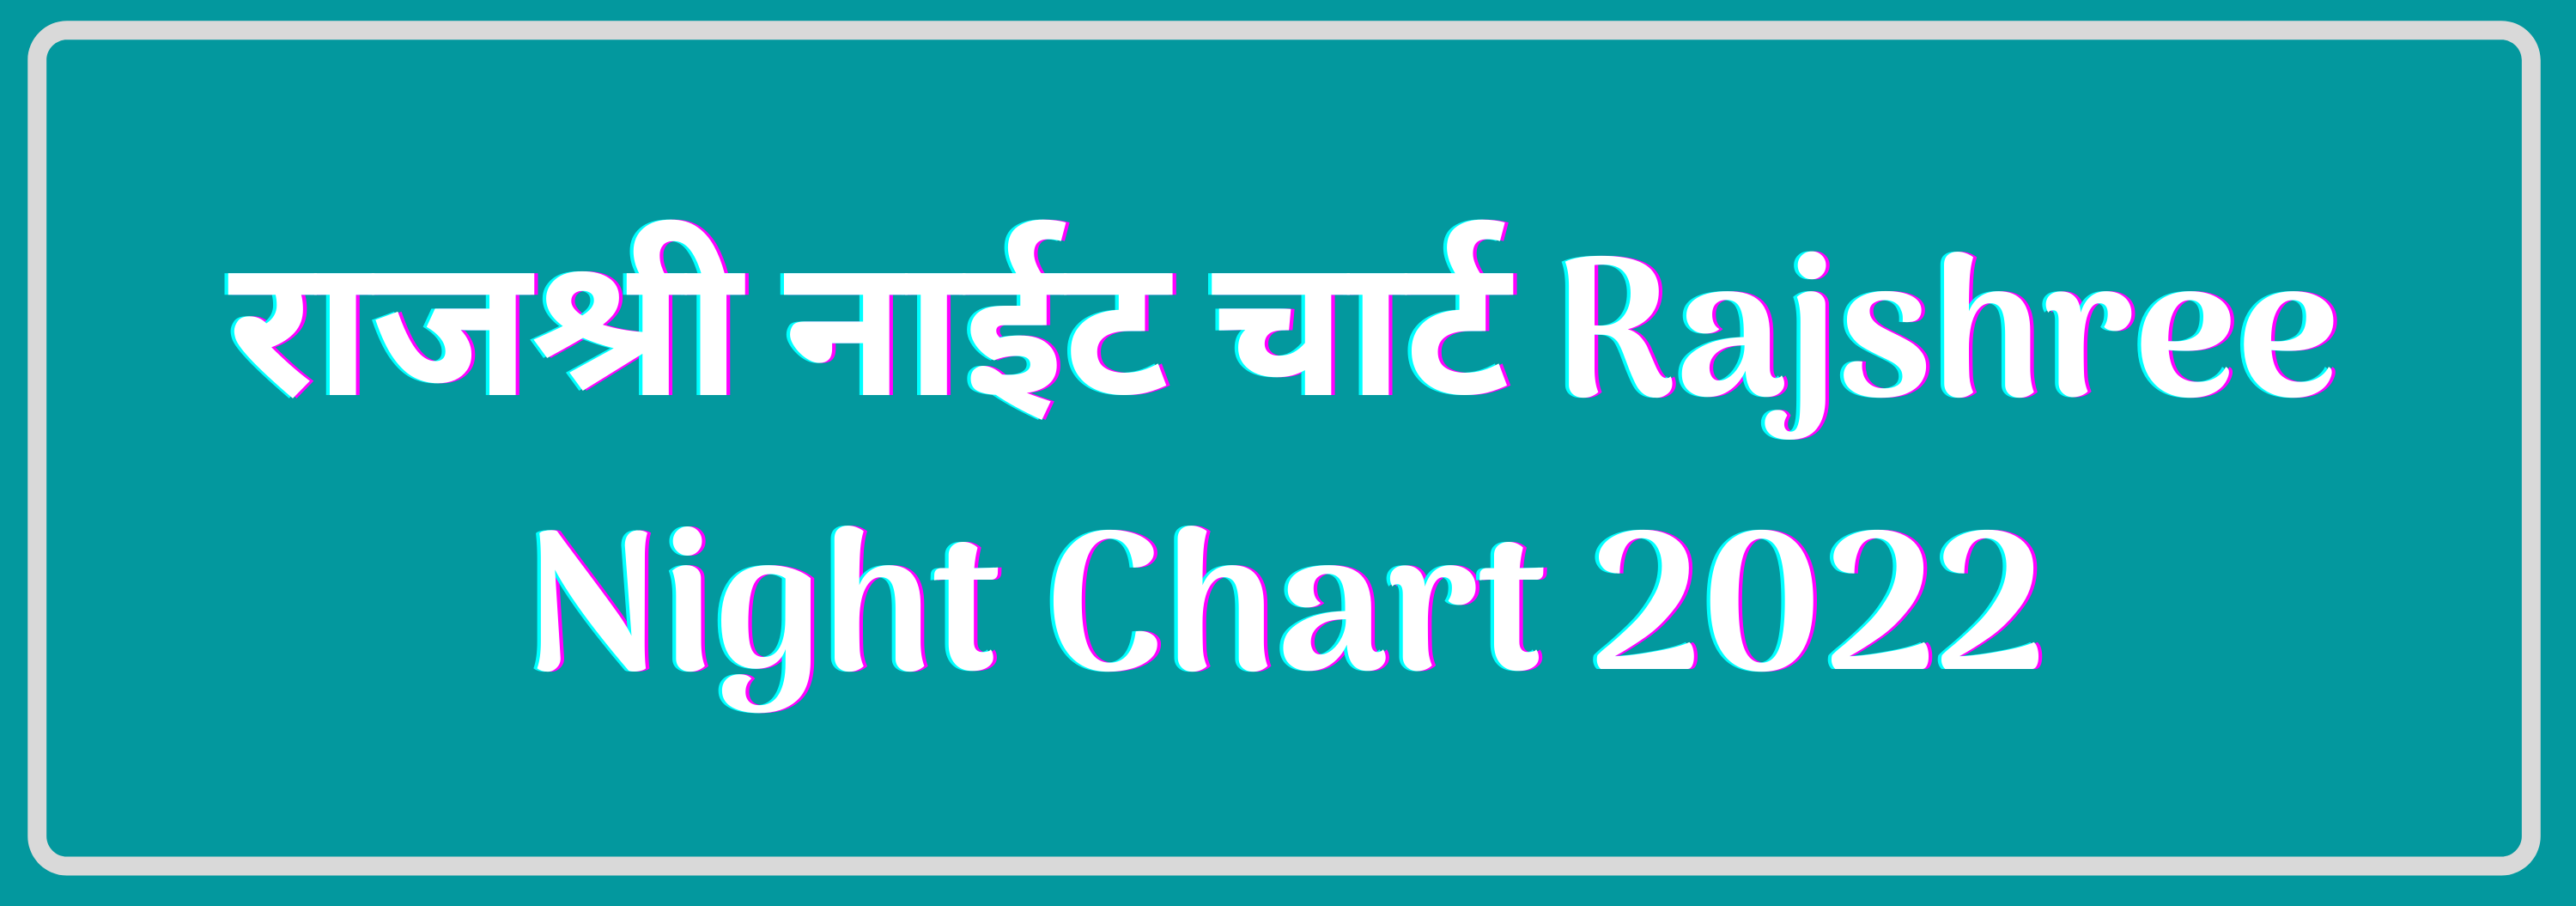 राजश्री नाईट चार्ट Rajshree Night Chart 2022